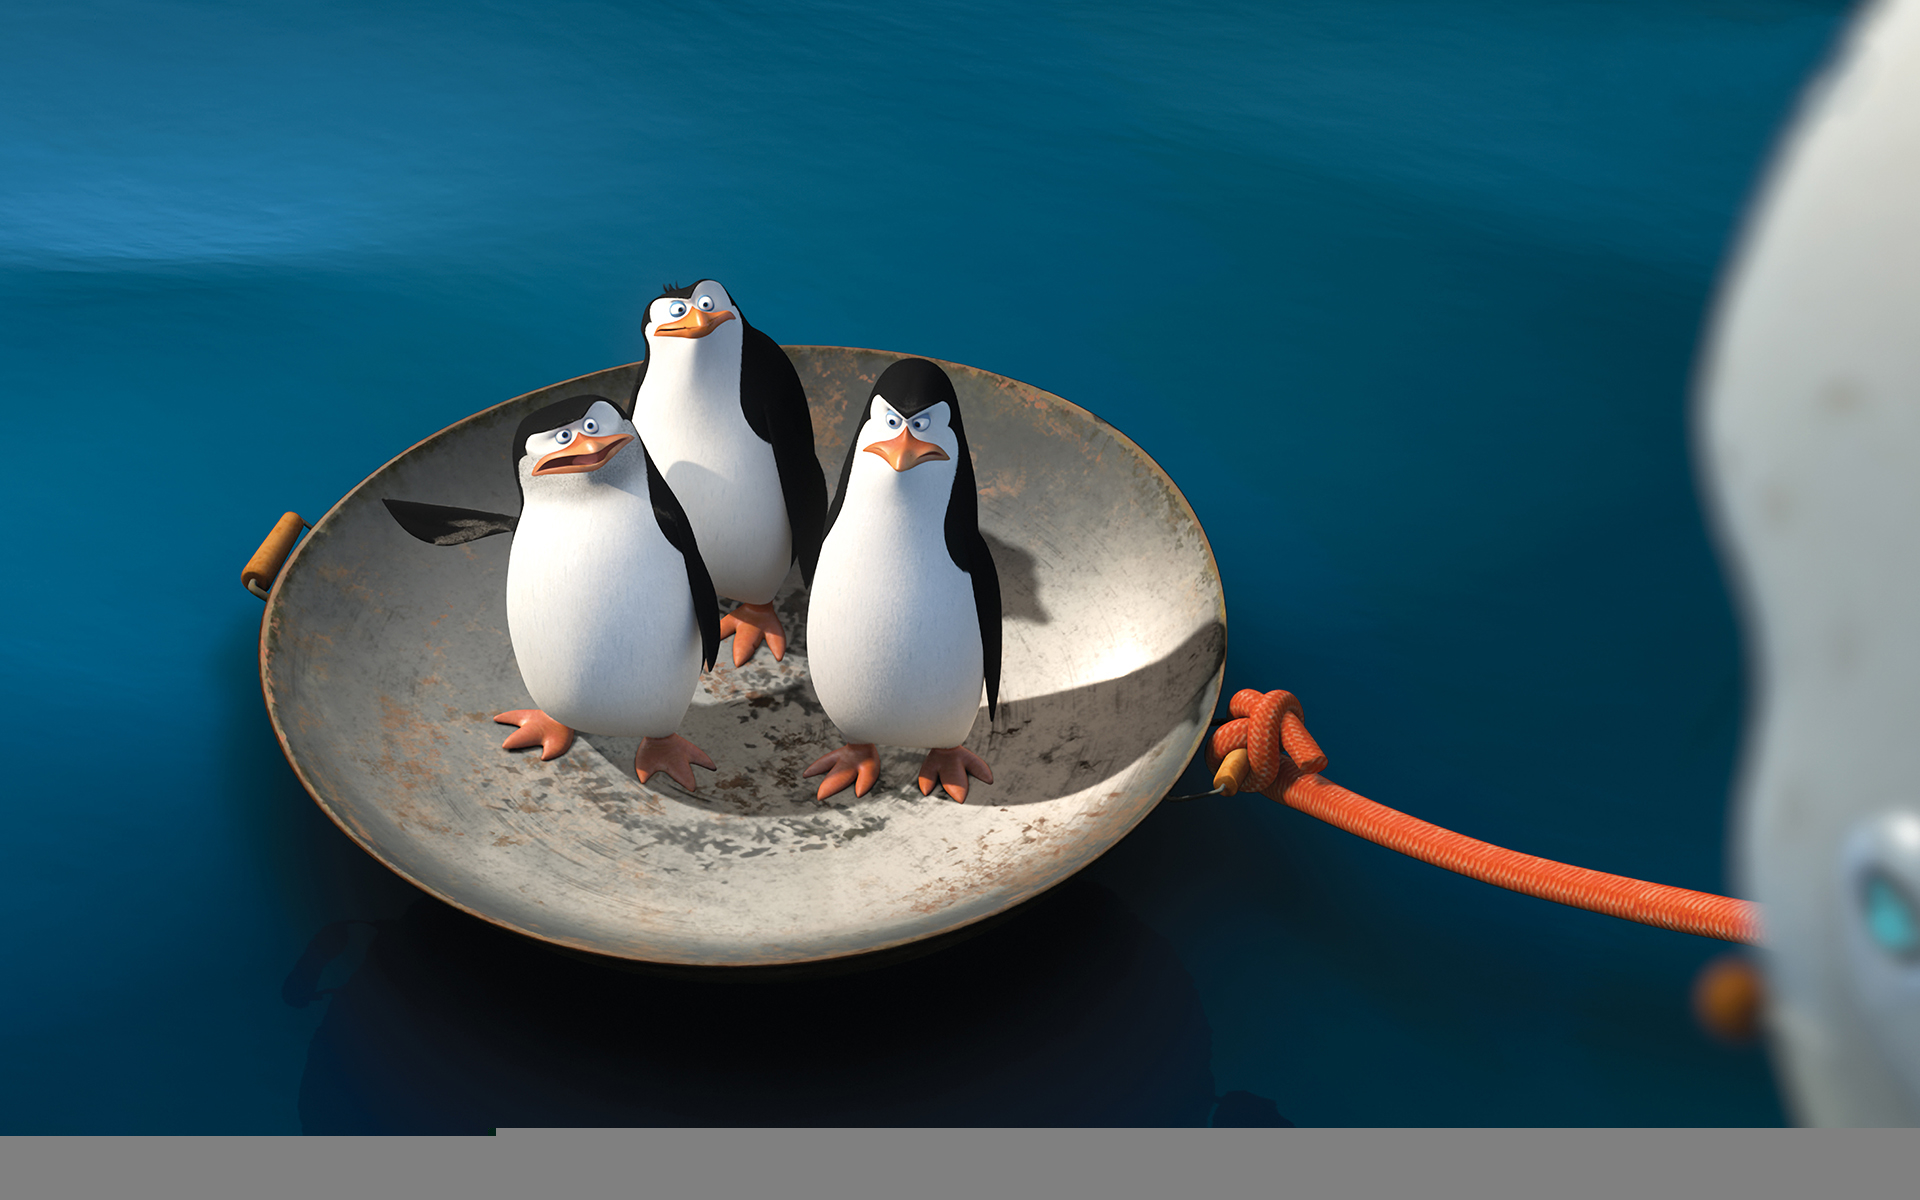 Скачать обои бесплатно Кино, Пингвины Мадагаскара: Фильм картинка на рабочий стол ПК